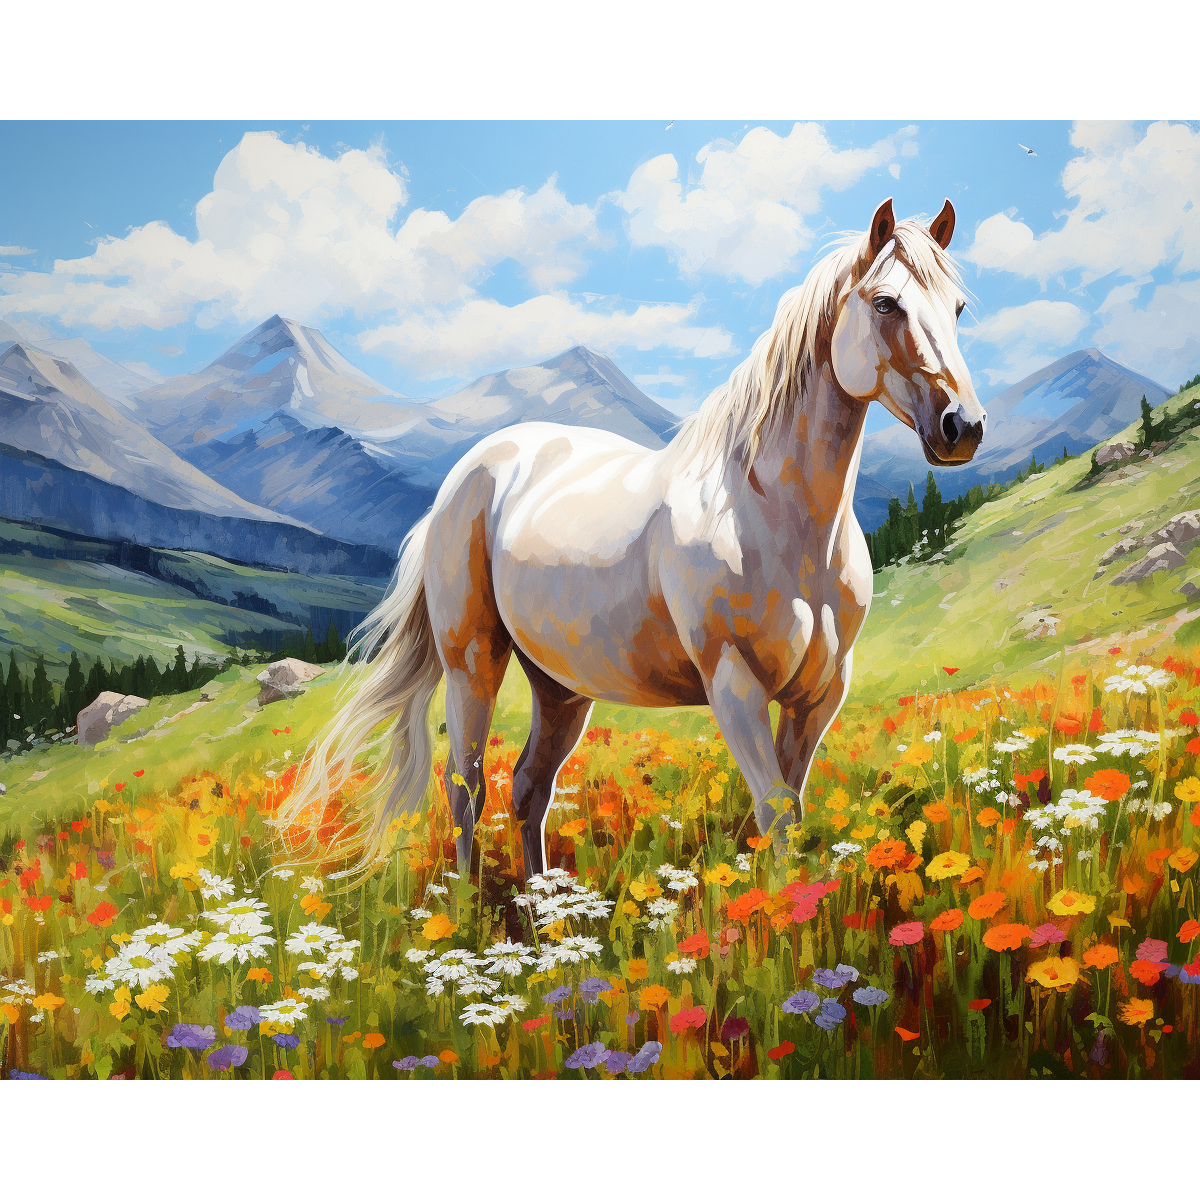 Meadow's Witte Paard Grace